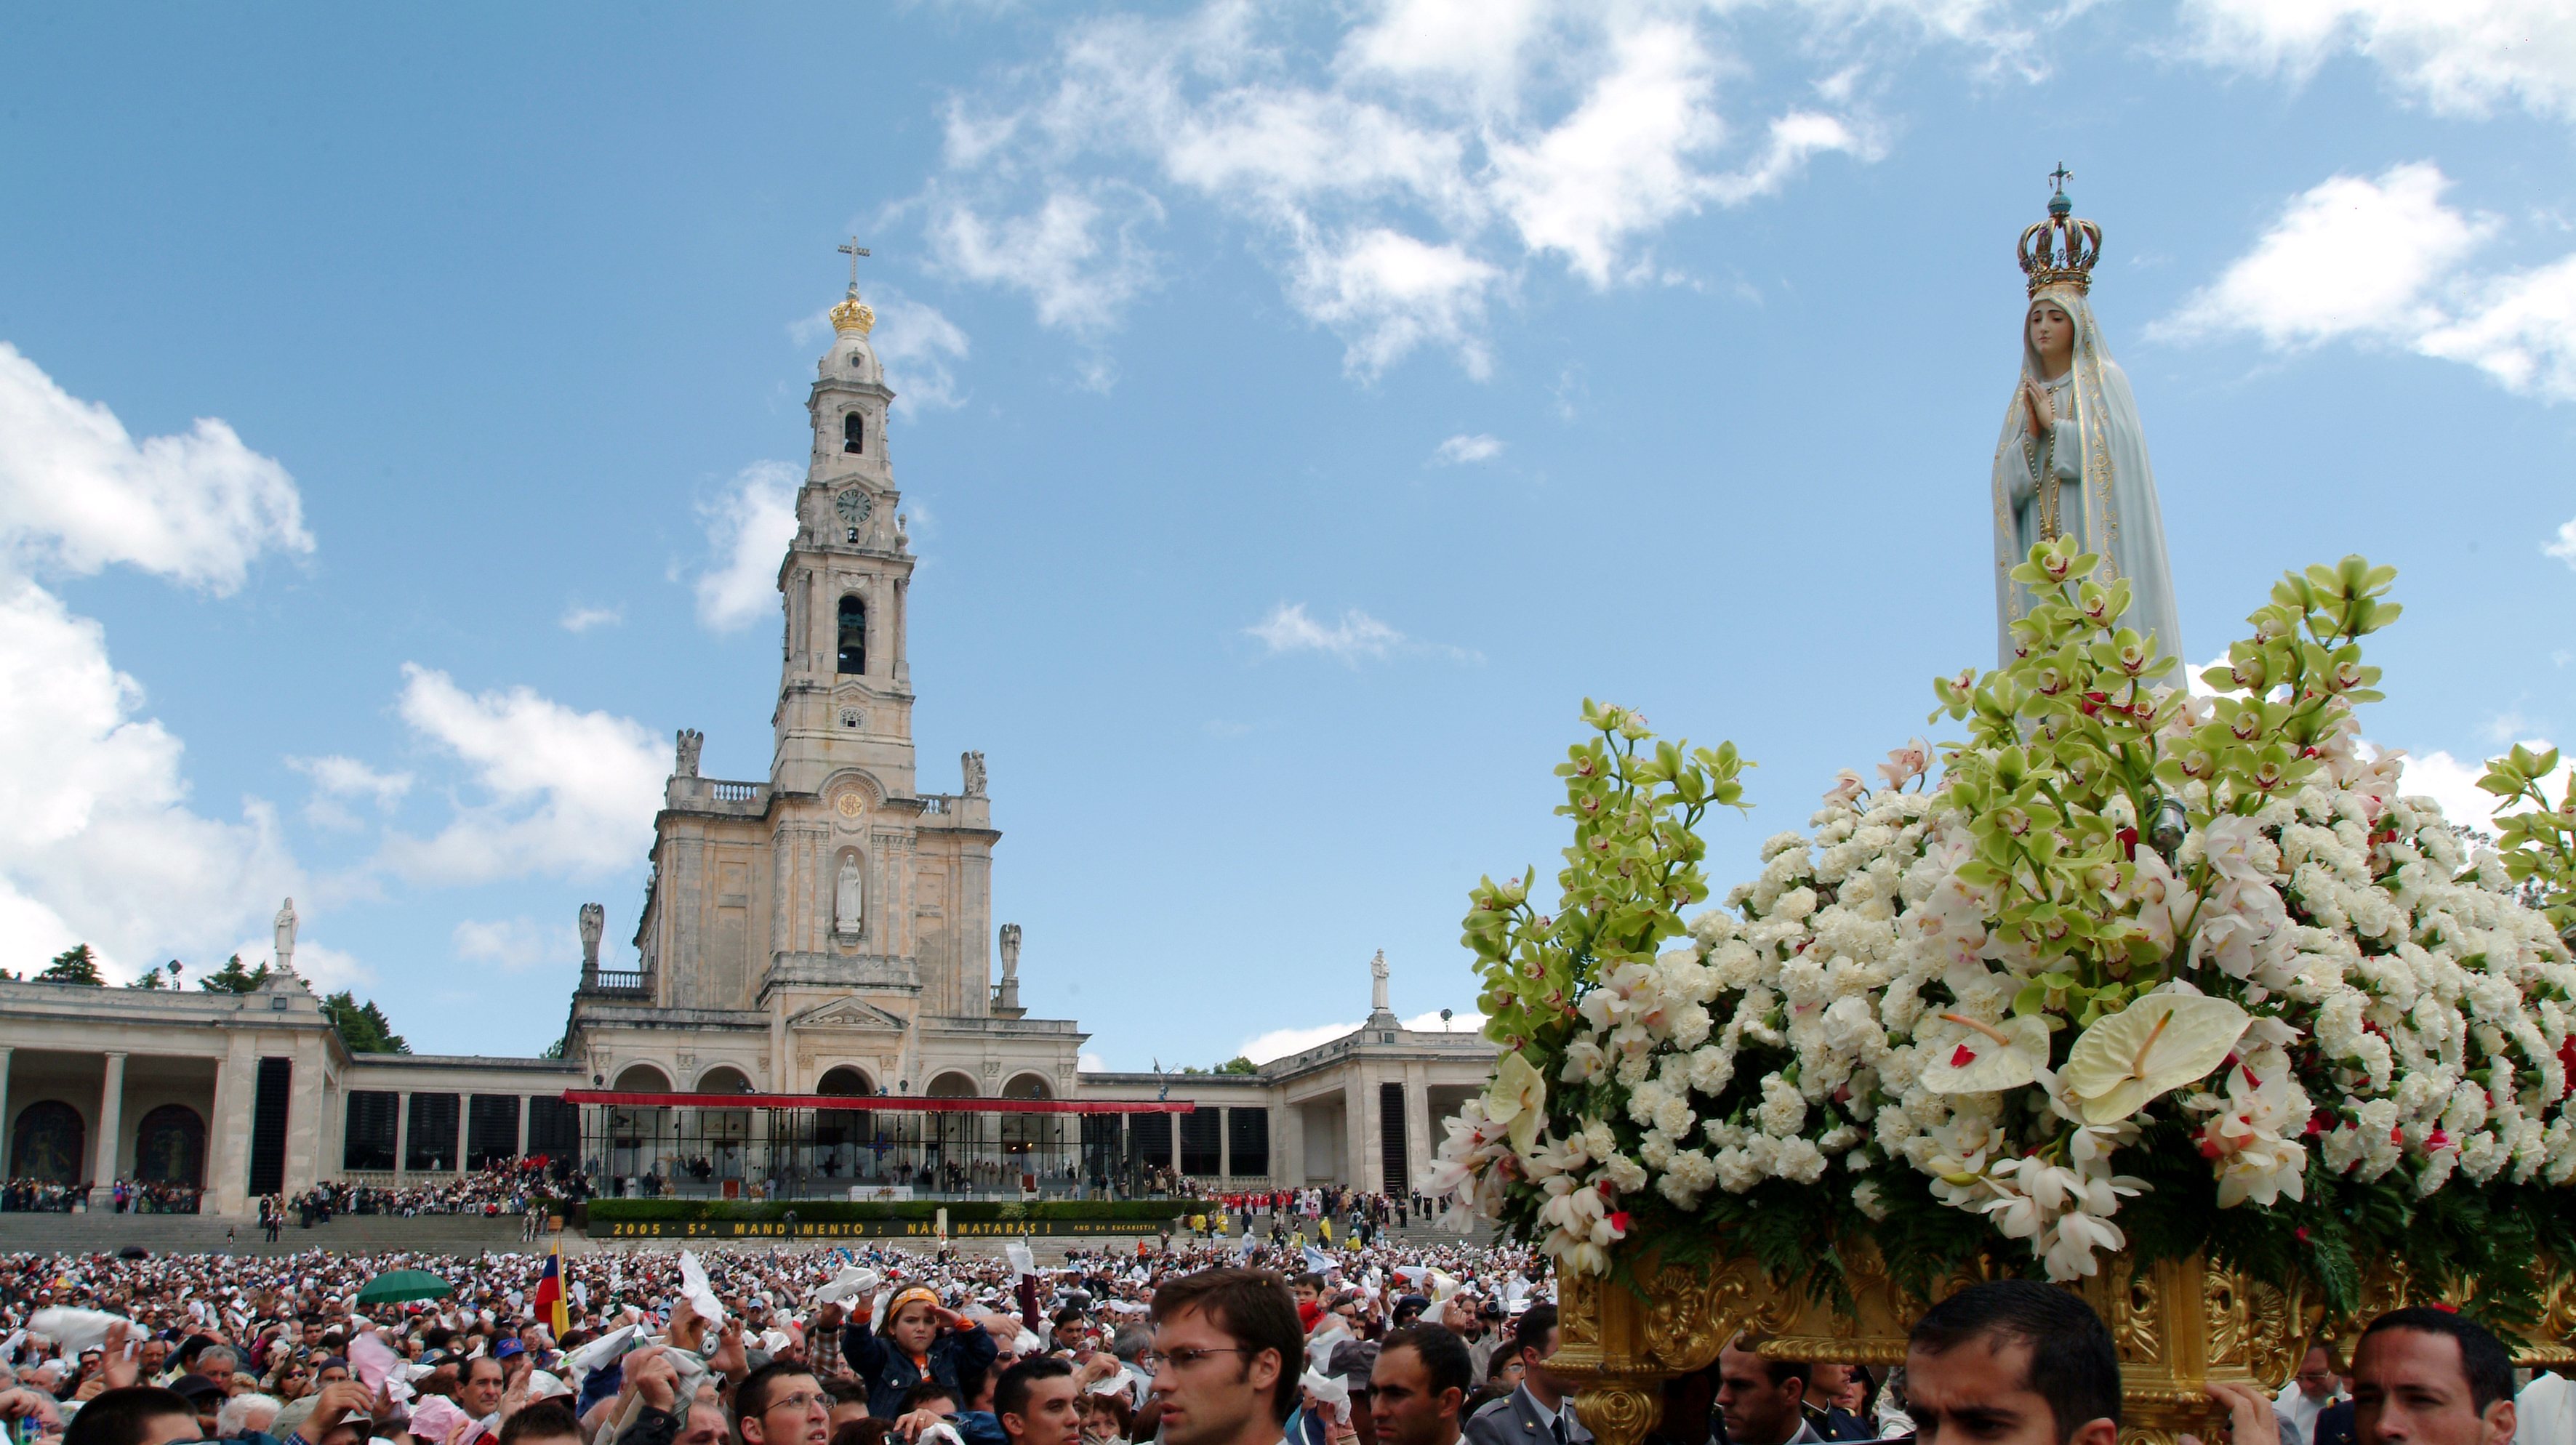 A JMJ realiza-se de 1 a 6 de agosto, em Lisboa, presidida pelo Papa Francisco, que se desloca ao Santuário de Fátima no dia 5. Já nos dias 12 e 13 de agosto, decorre a peregrinação do migrante e refugiado a este santuário